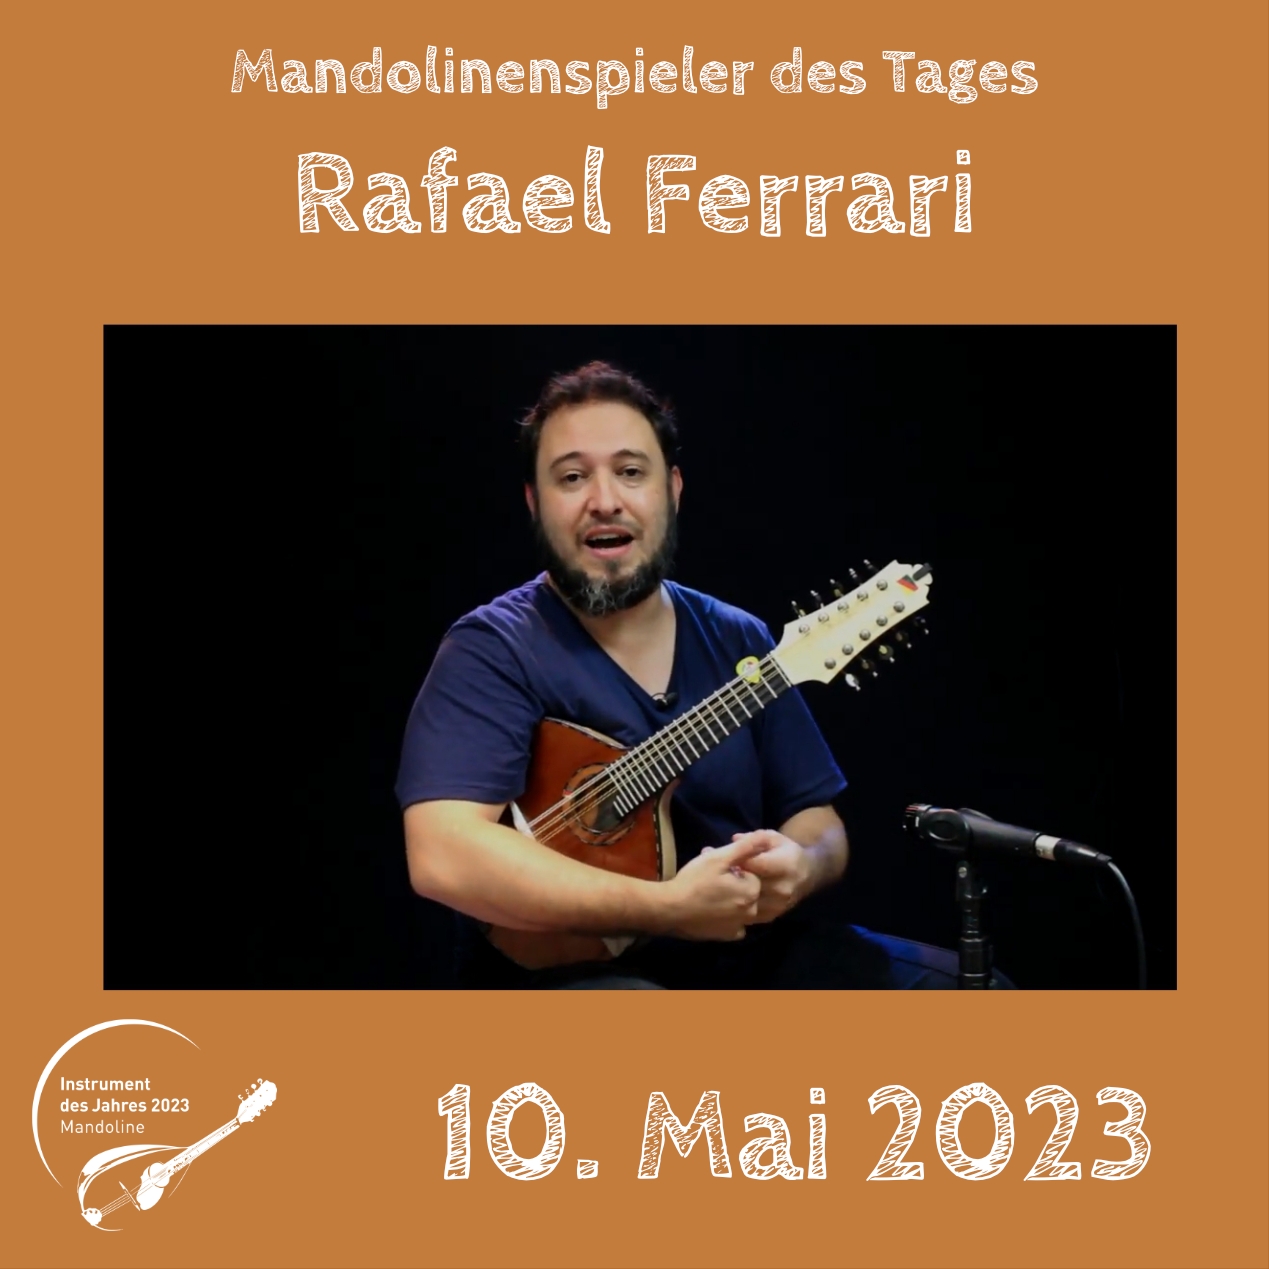 Rafael Ferrari Mandoline Instrument des Jahres 2023 Mandolinenspieler Mandolinenspielerin des Tages